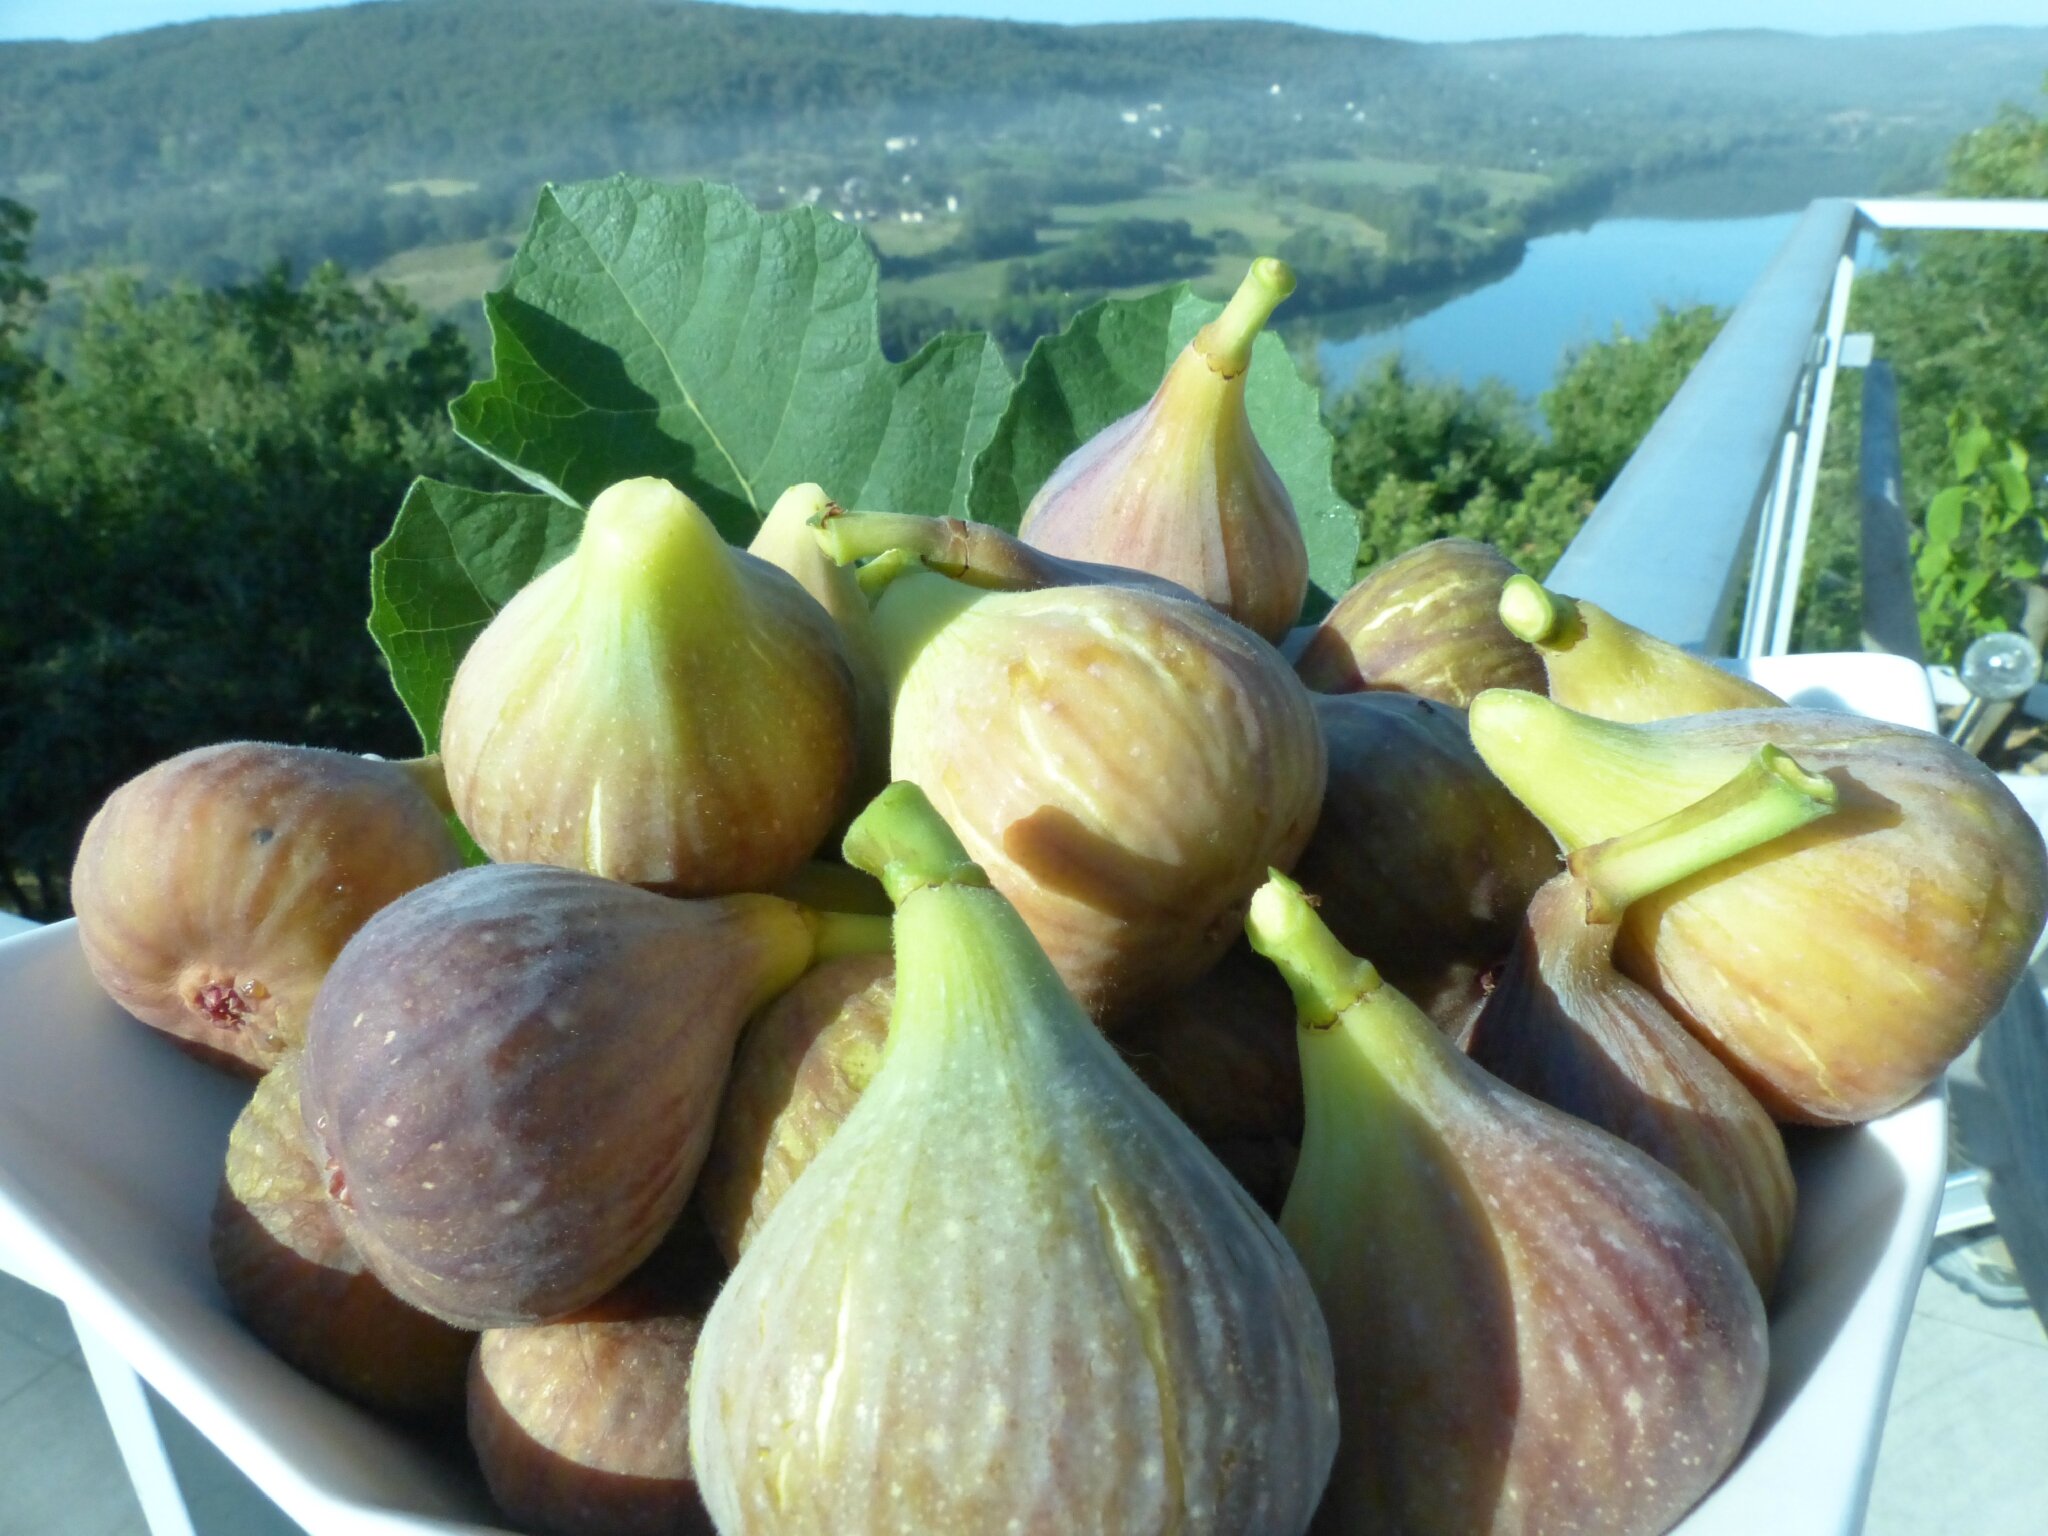 Confit de figues au vinaigre balsamique - Apéro provençal